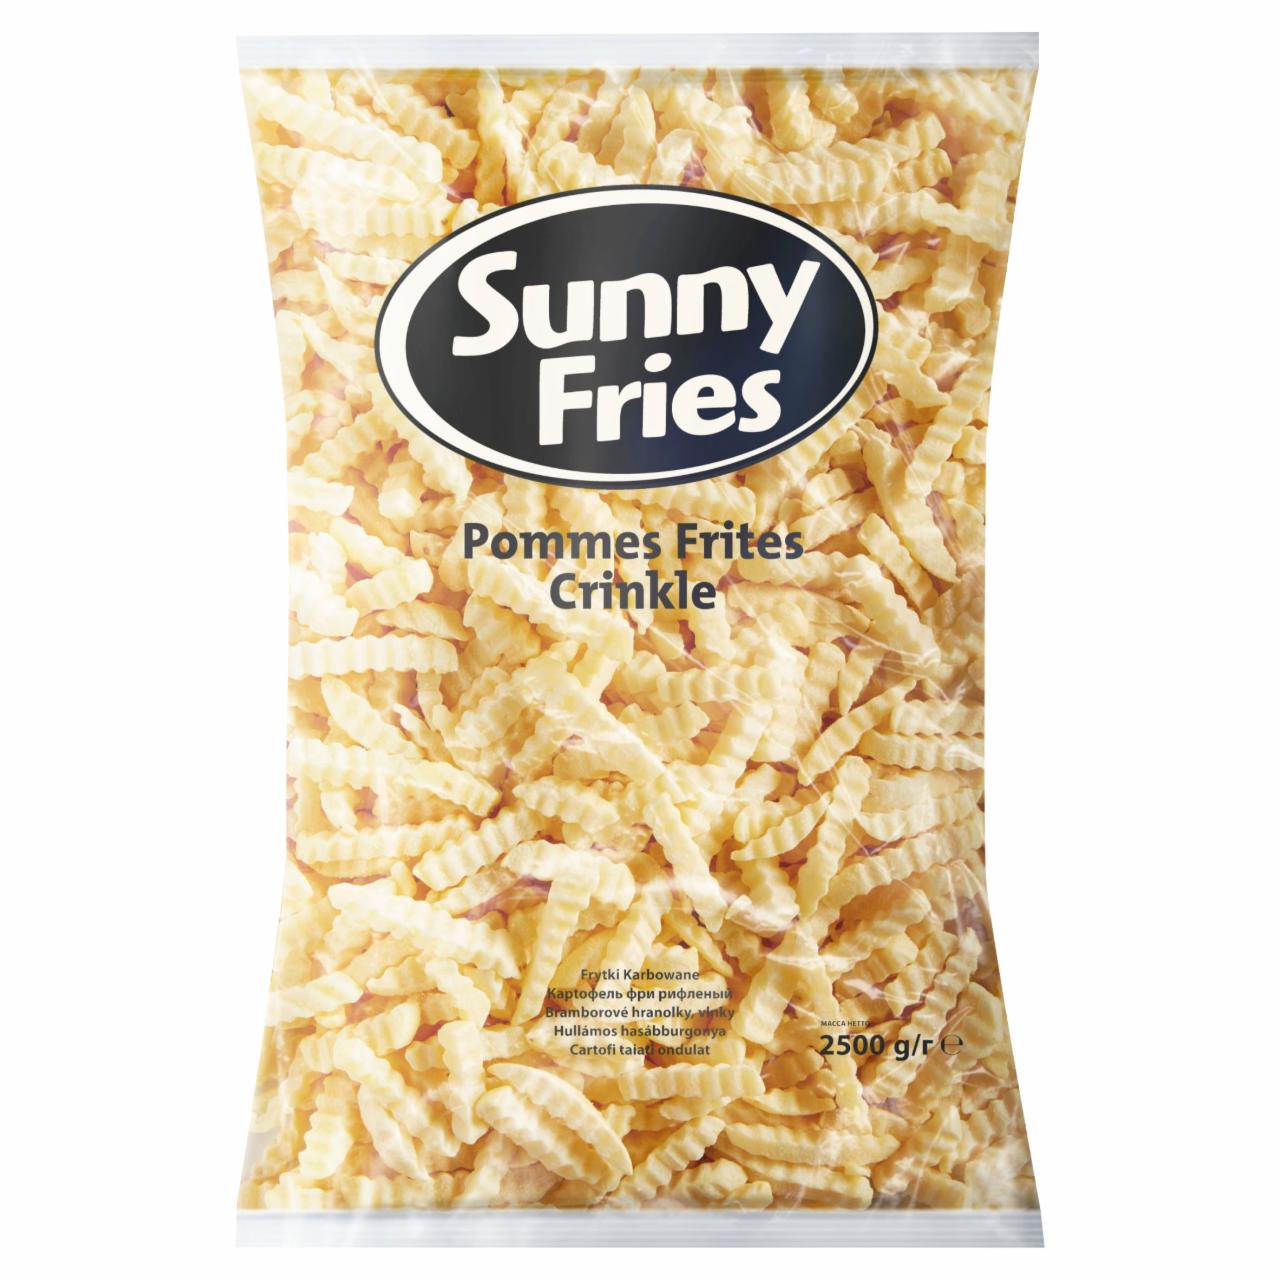 Zdjęcia - Sunny Fries Frytki karbowane 2,5 kg